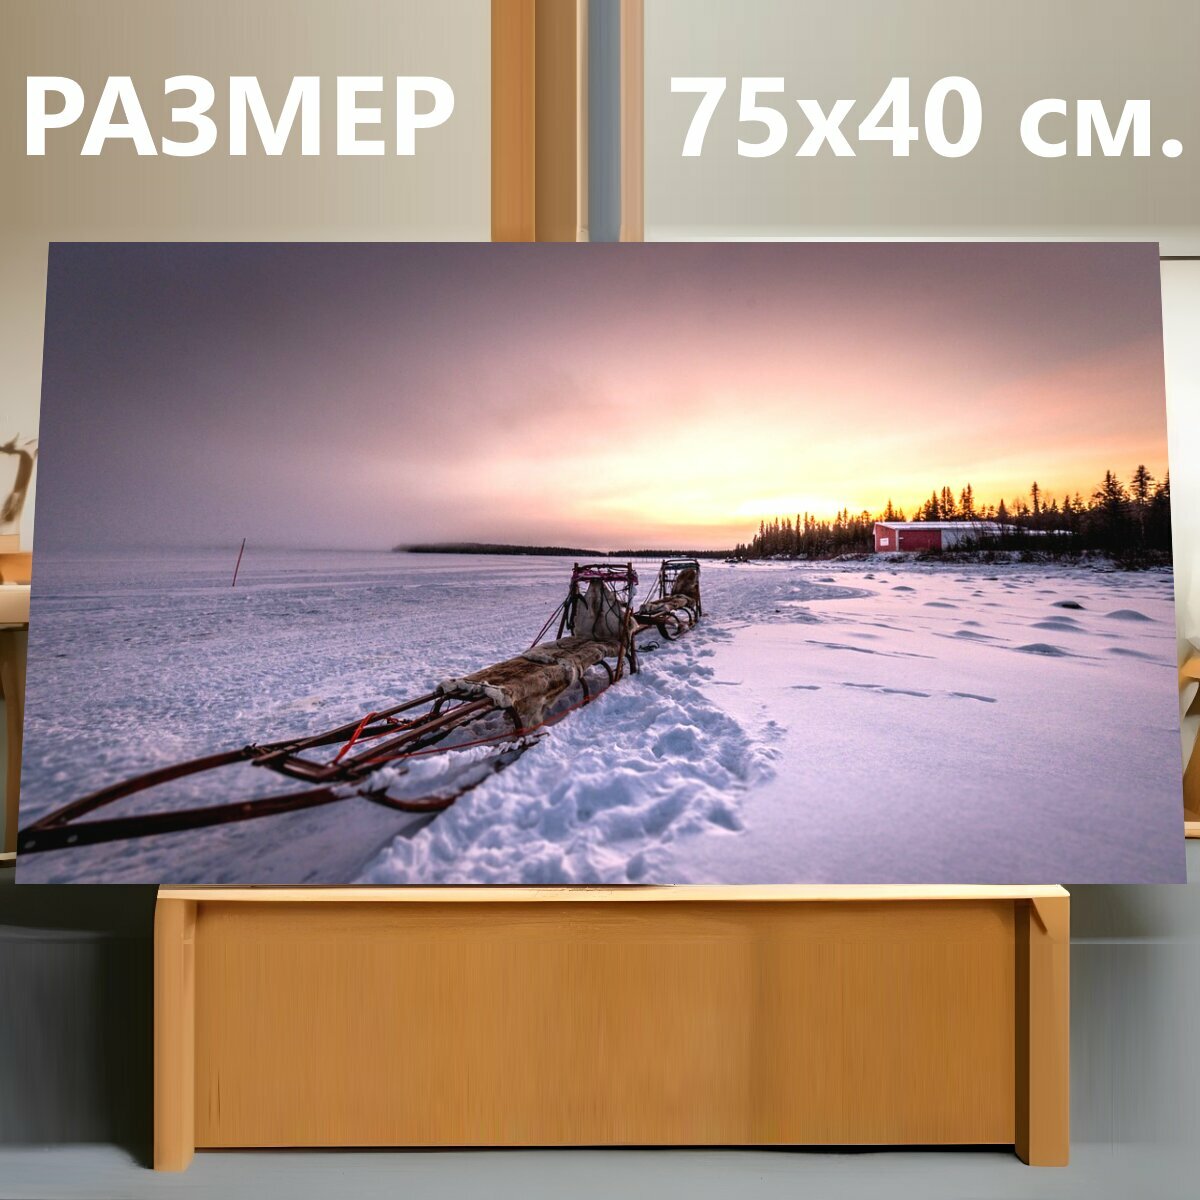 Картина на холсте "Собачьих упряжках, санки, снег" на подрамнике 75х40 см. для интерьера